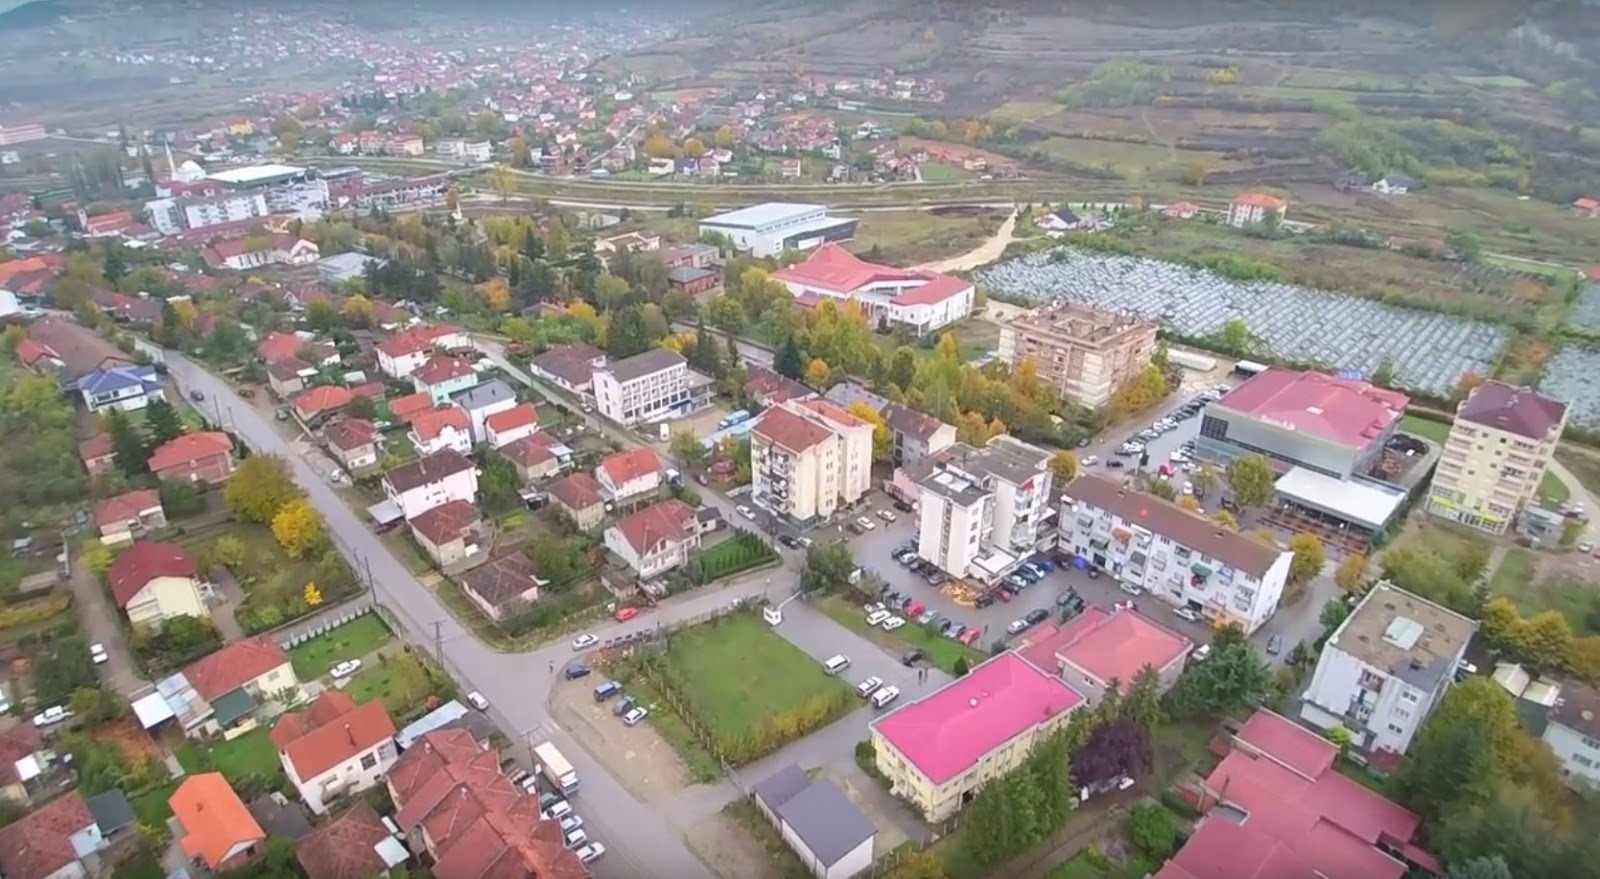 As votat me shumicë nga diaspora nuk i ndihmojnë VV-së për ta kaluar PSD-në në Kamenicë